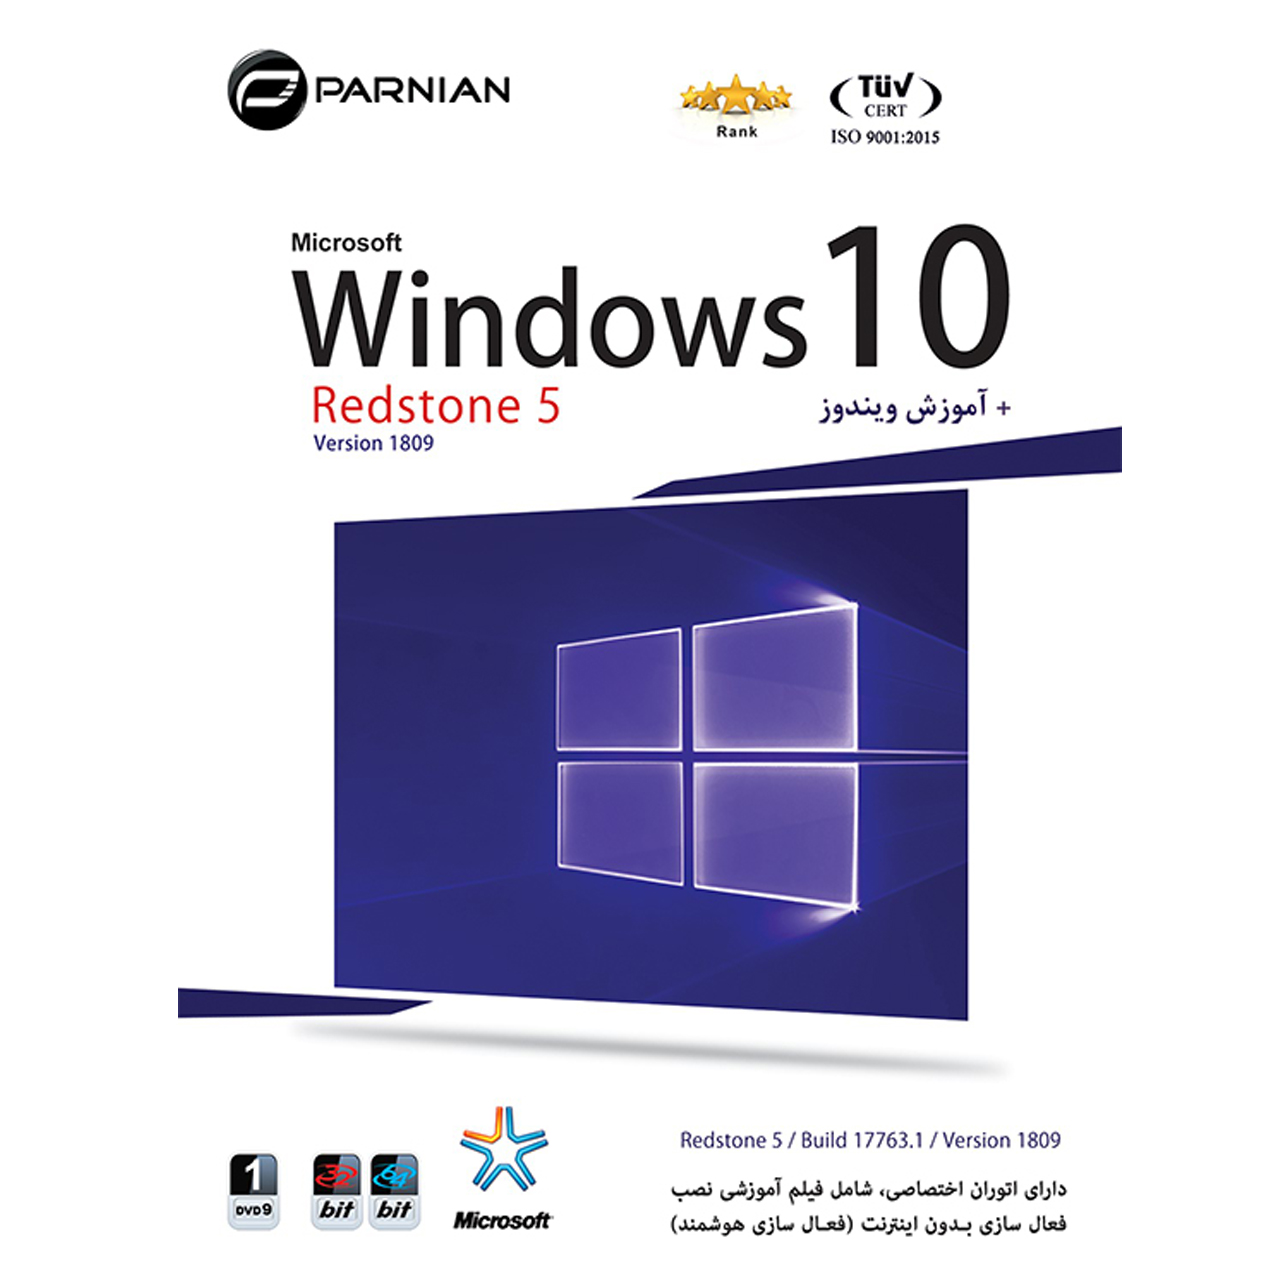 سیستم عامل ویندوز 10 نسخه windows10 redston5 نشر پرنیان